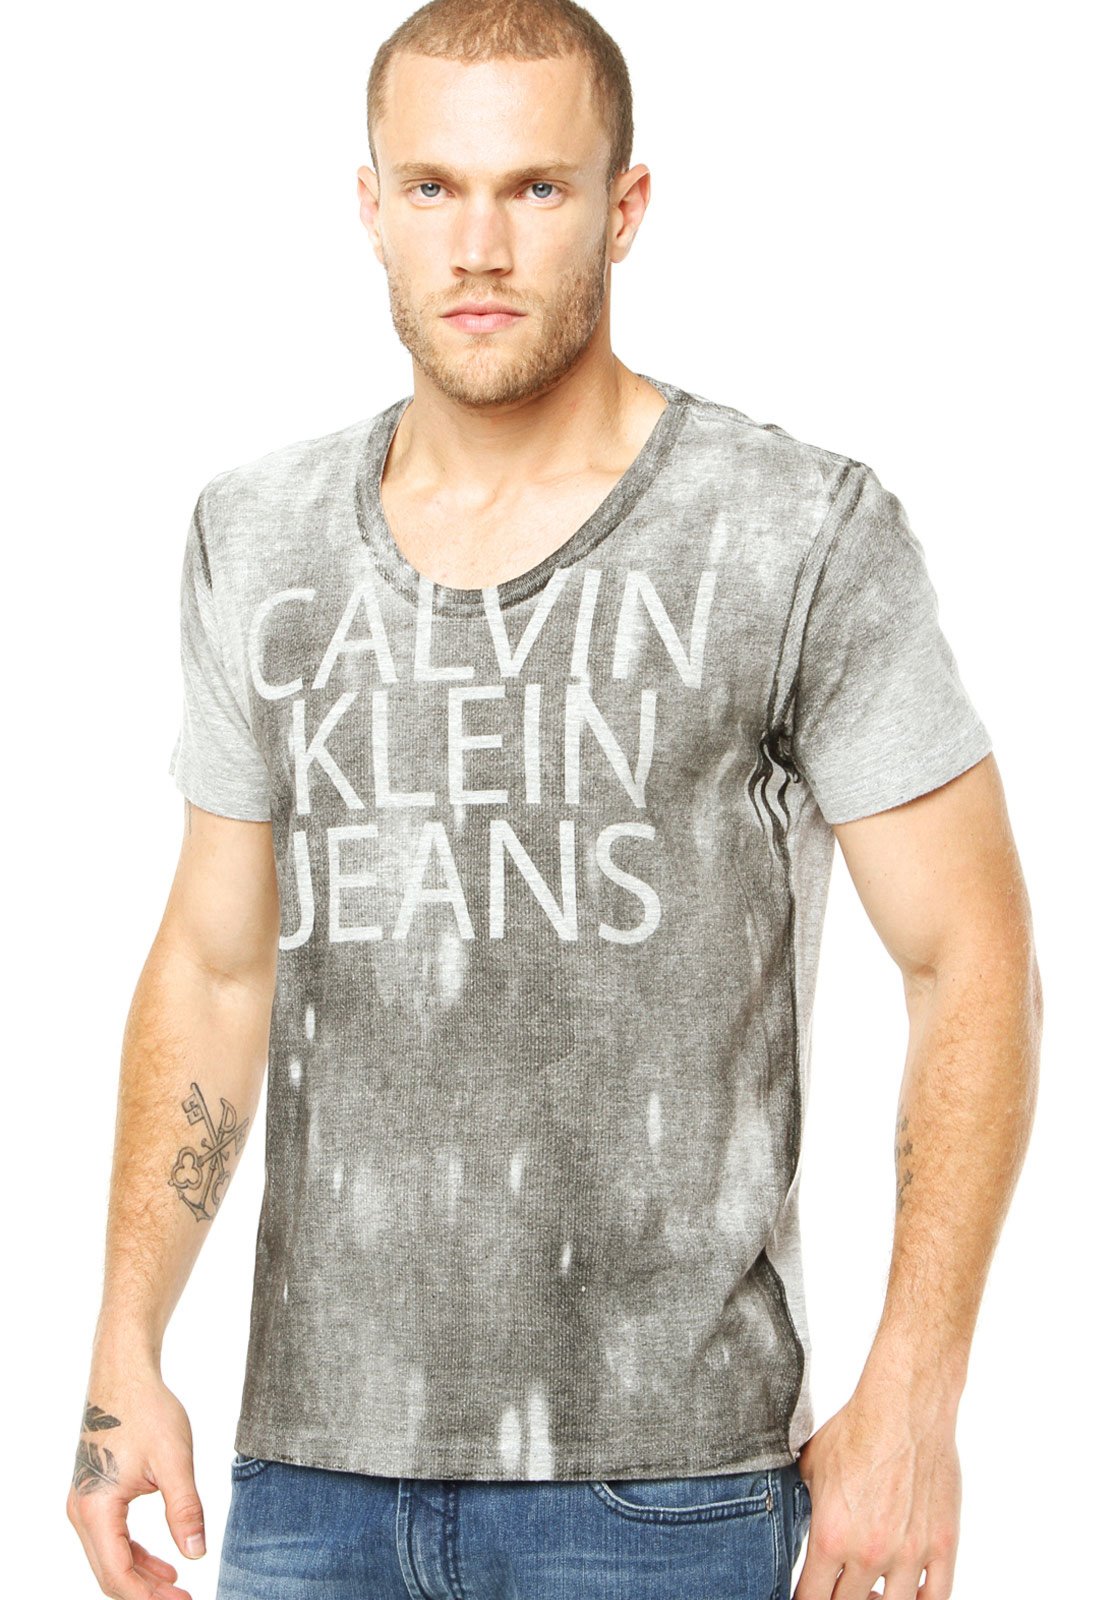 Camiseta Calvin Klein Jeans Name Cinza - Compre Agora